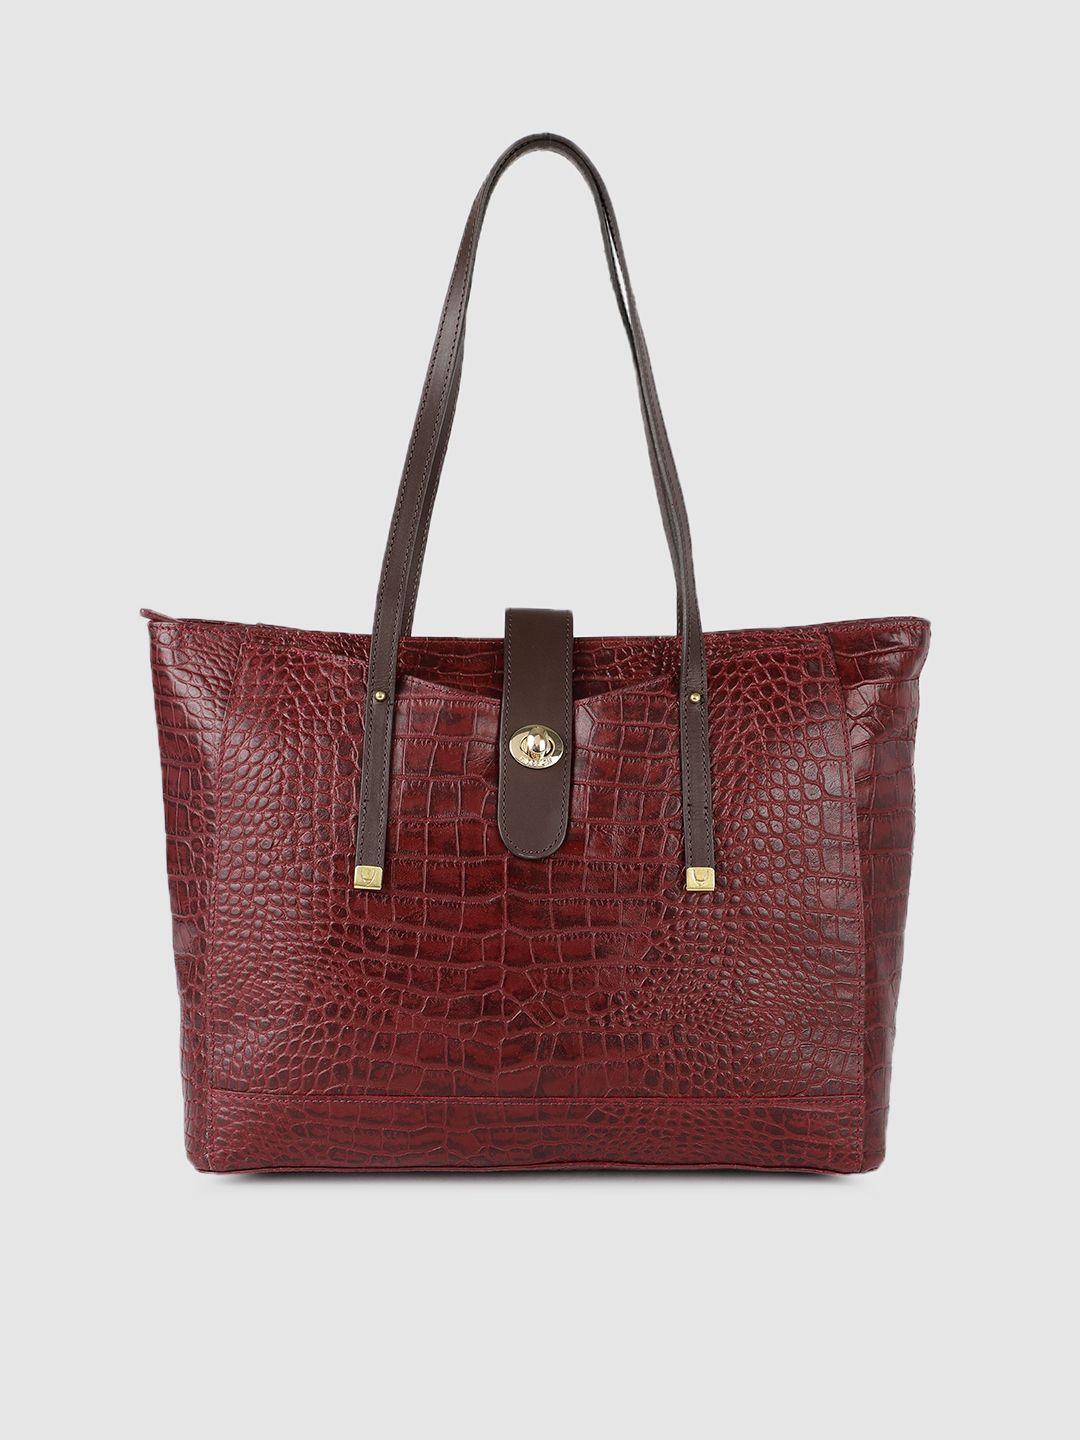 hidesign red leather textured shoulder bag